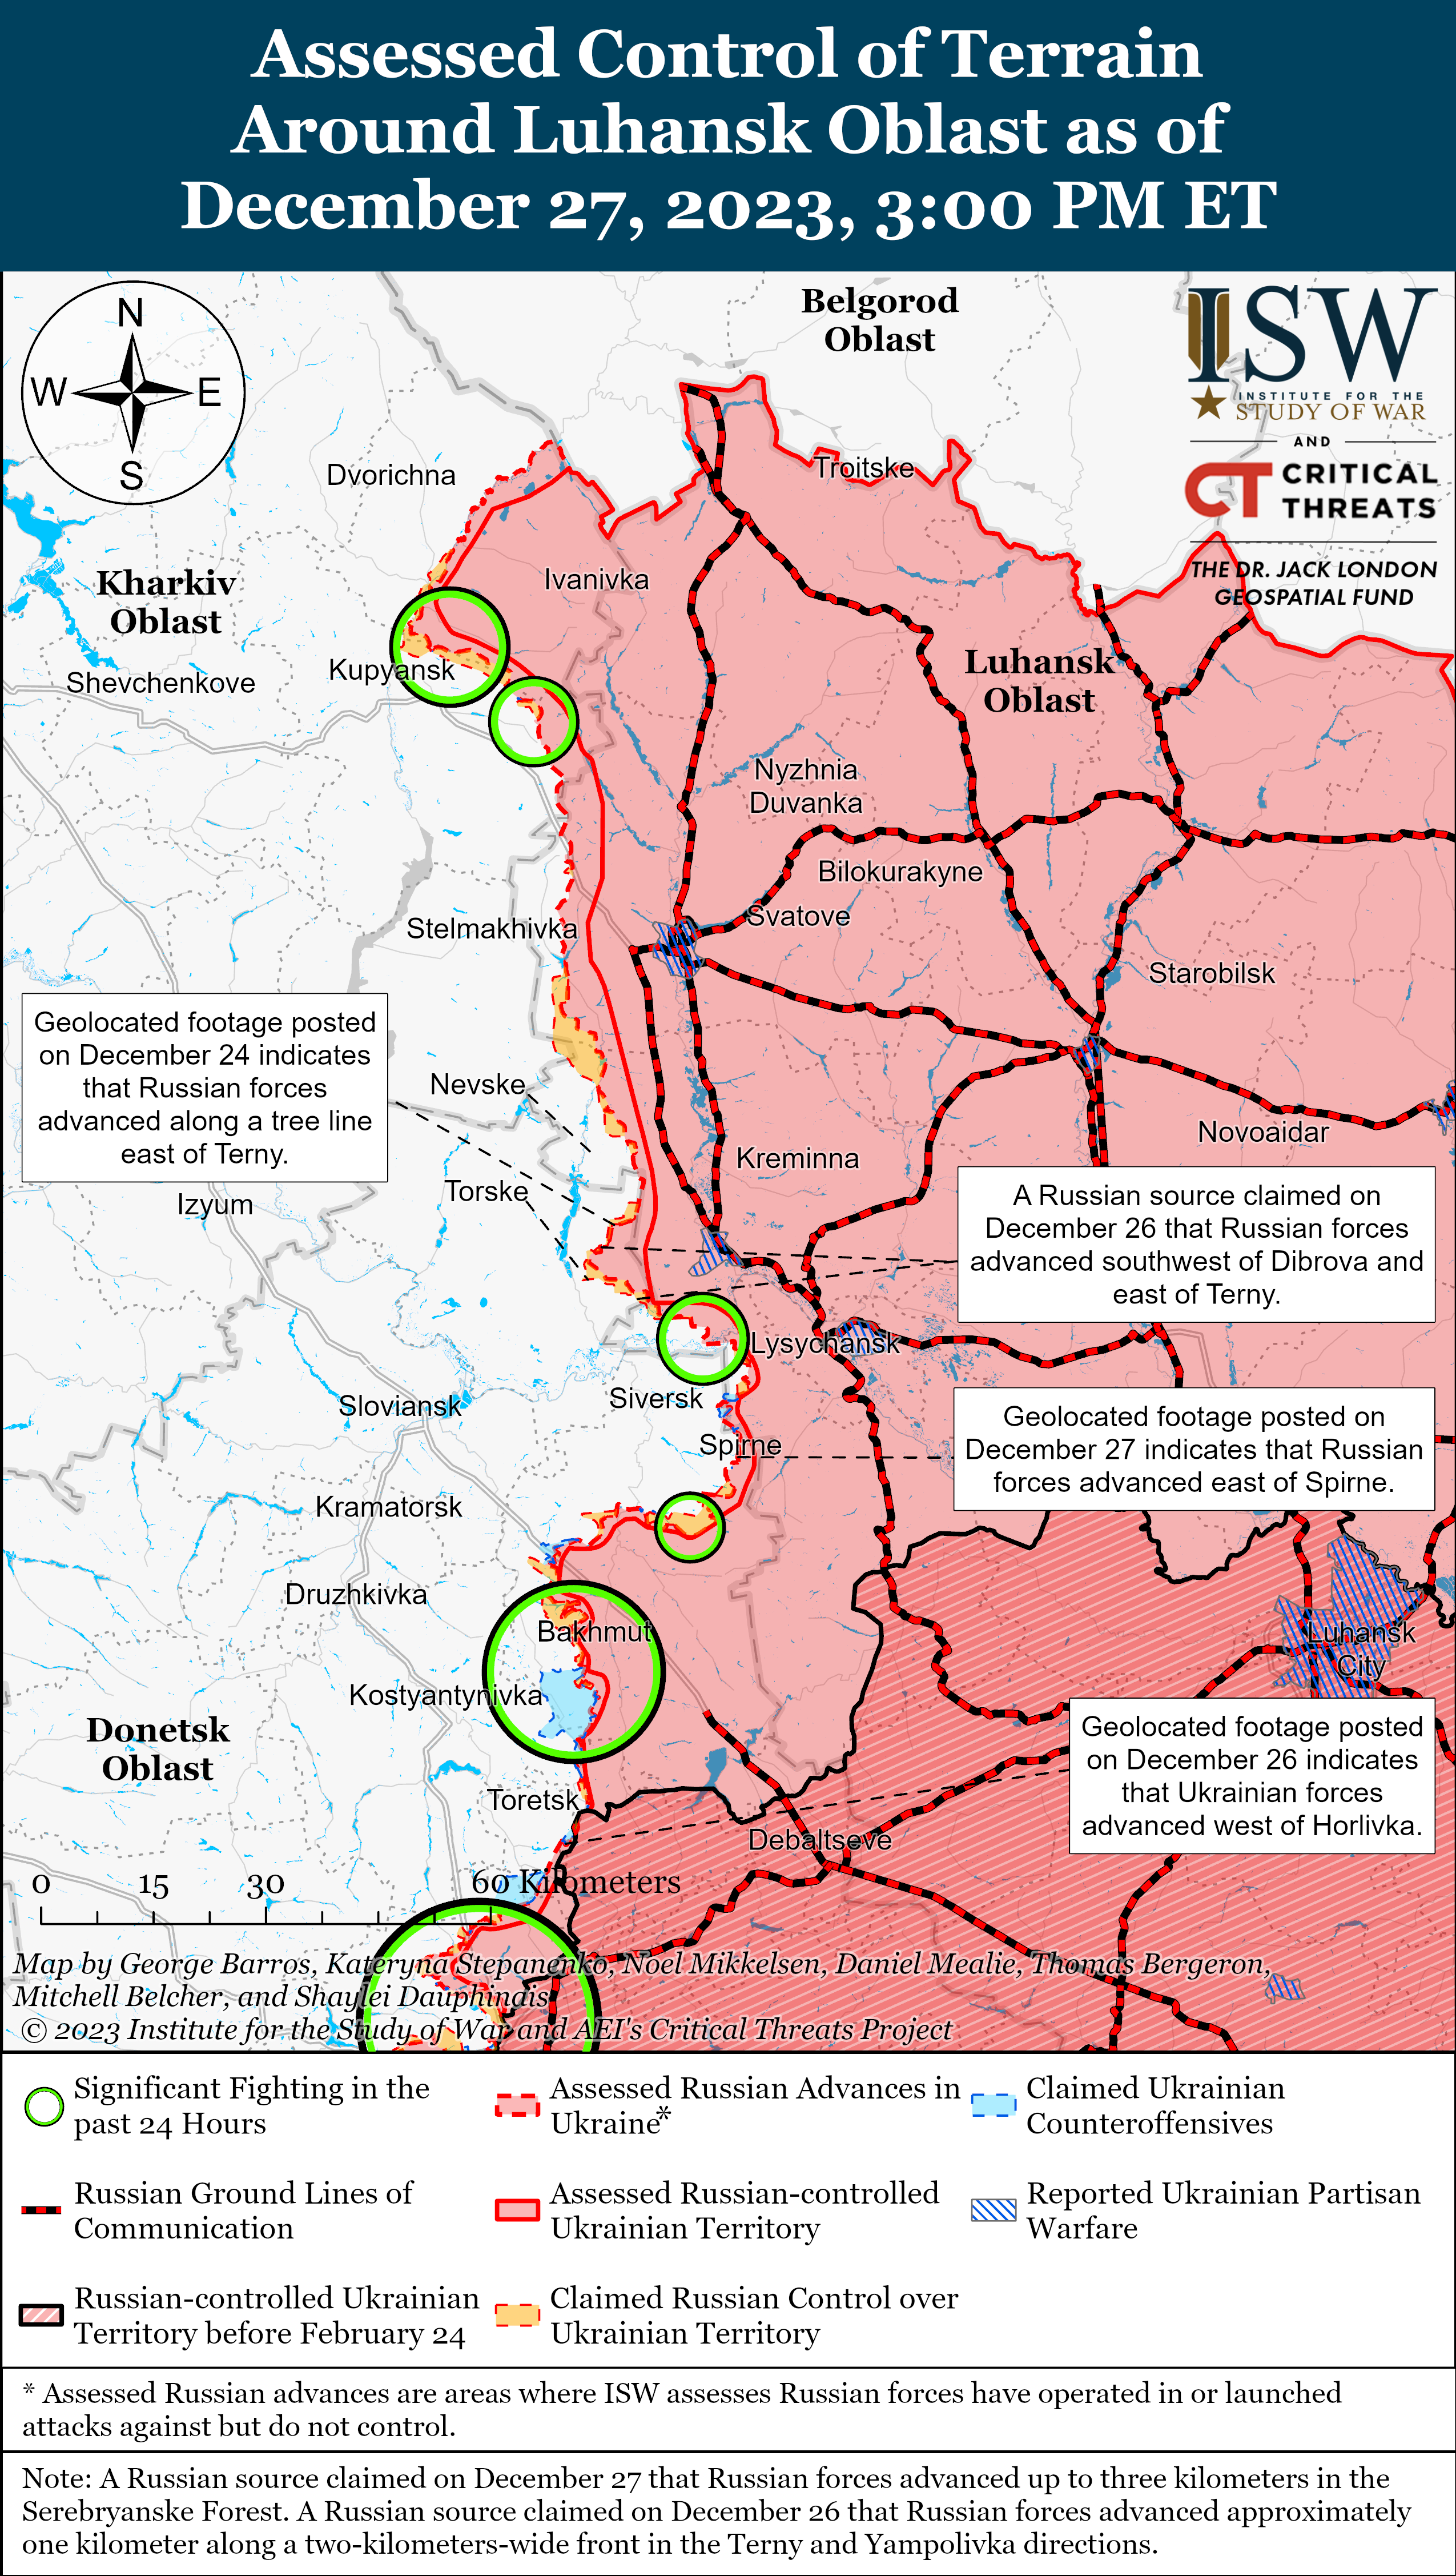 Українські війська нещодавно просунулися на захід від Горлівки: карти ISW